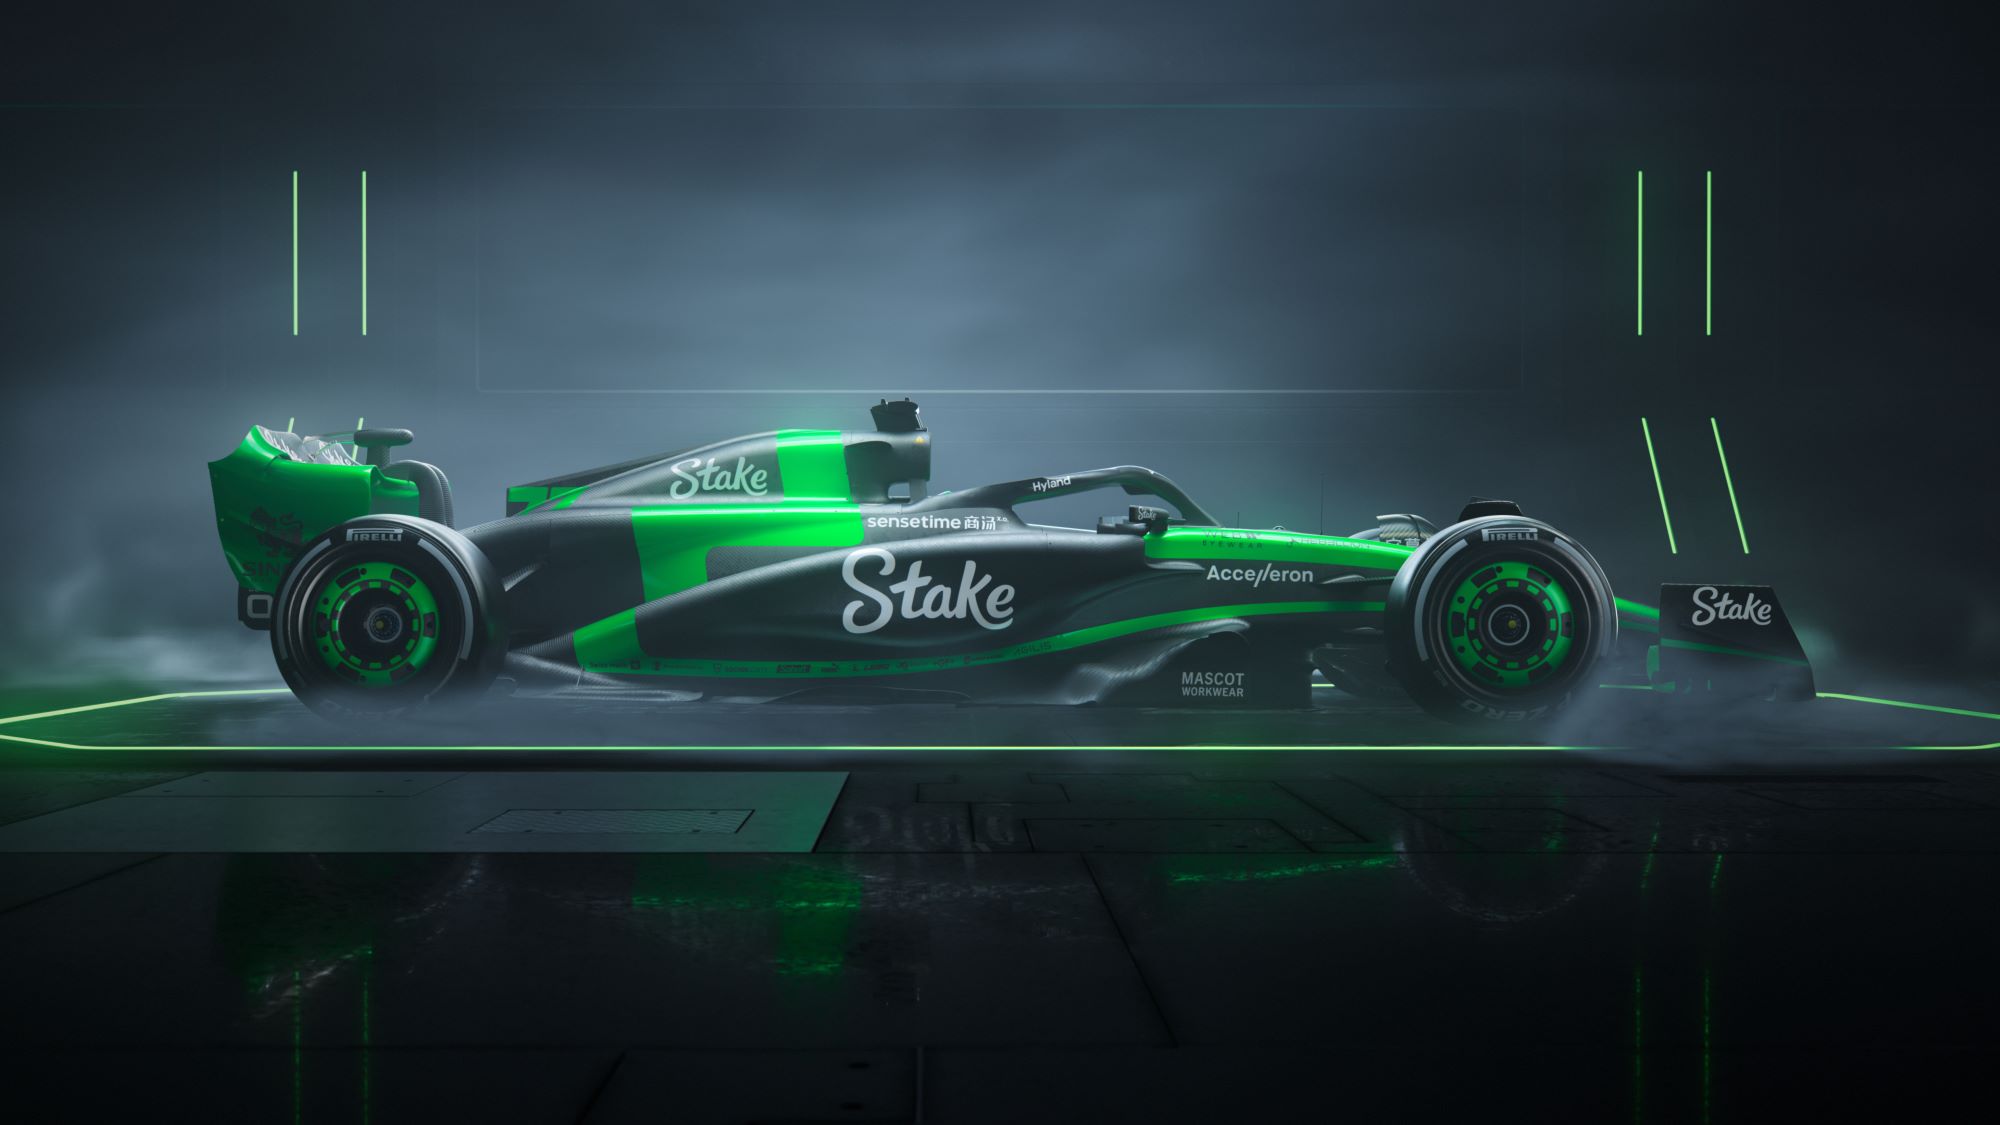 F1: Sauber inaugura era Stake F1 Team com design 